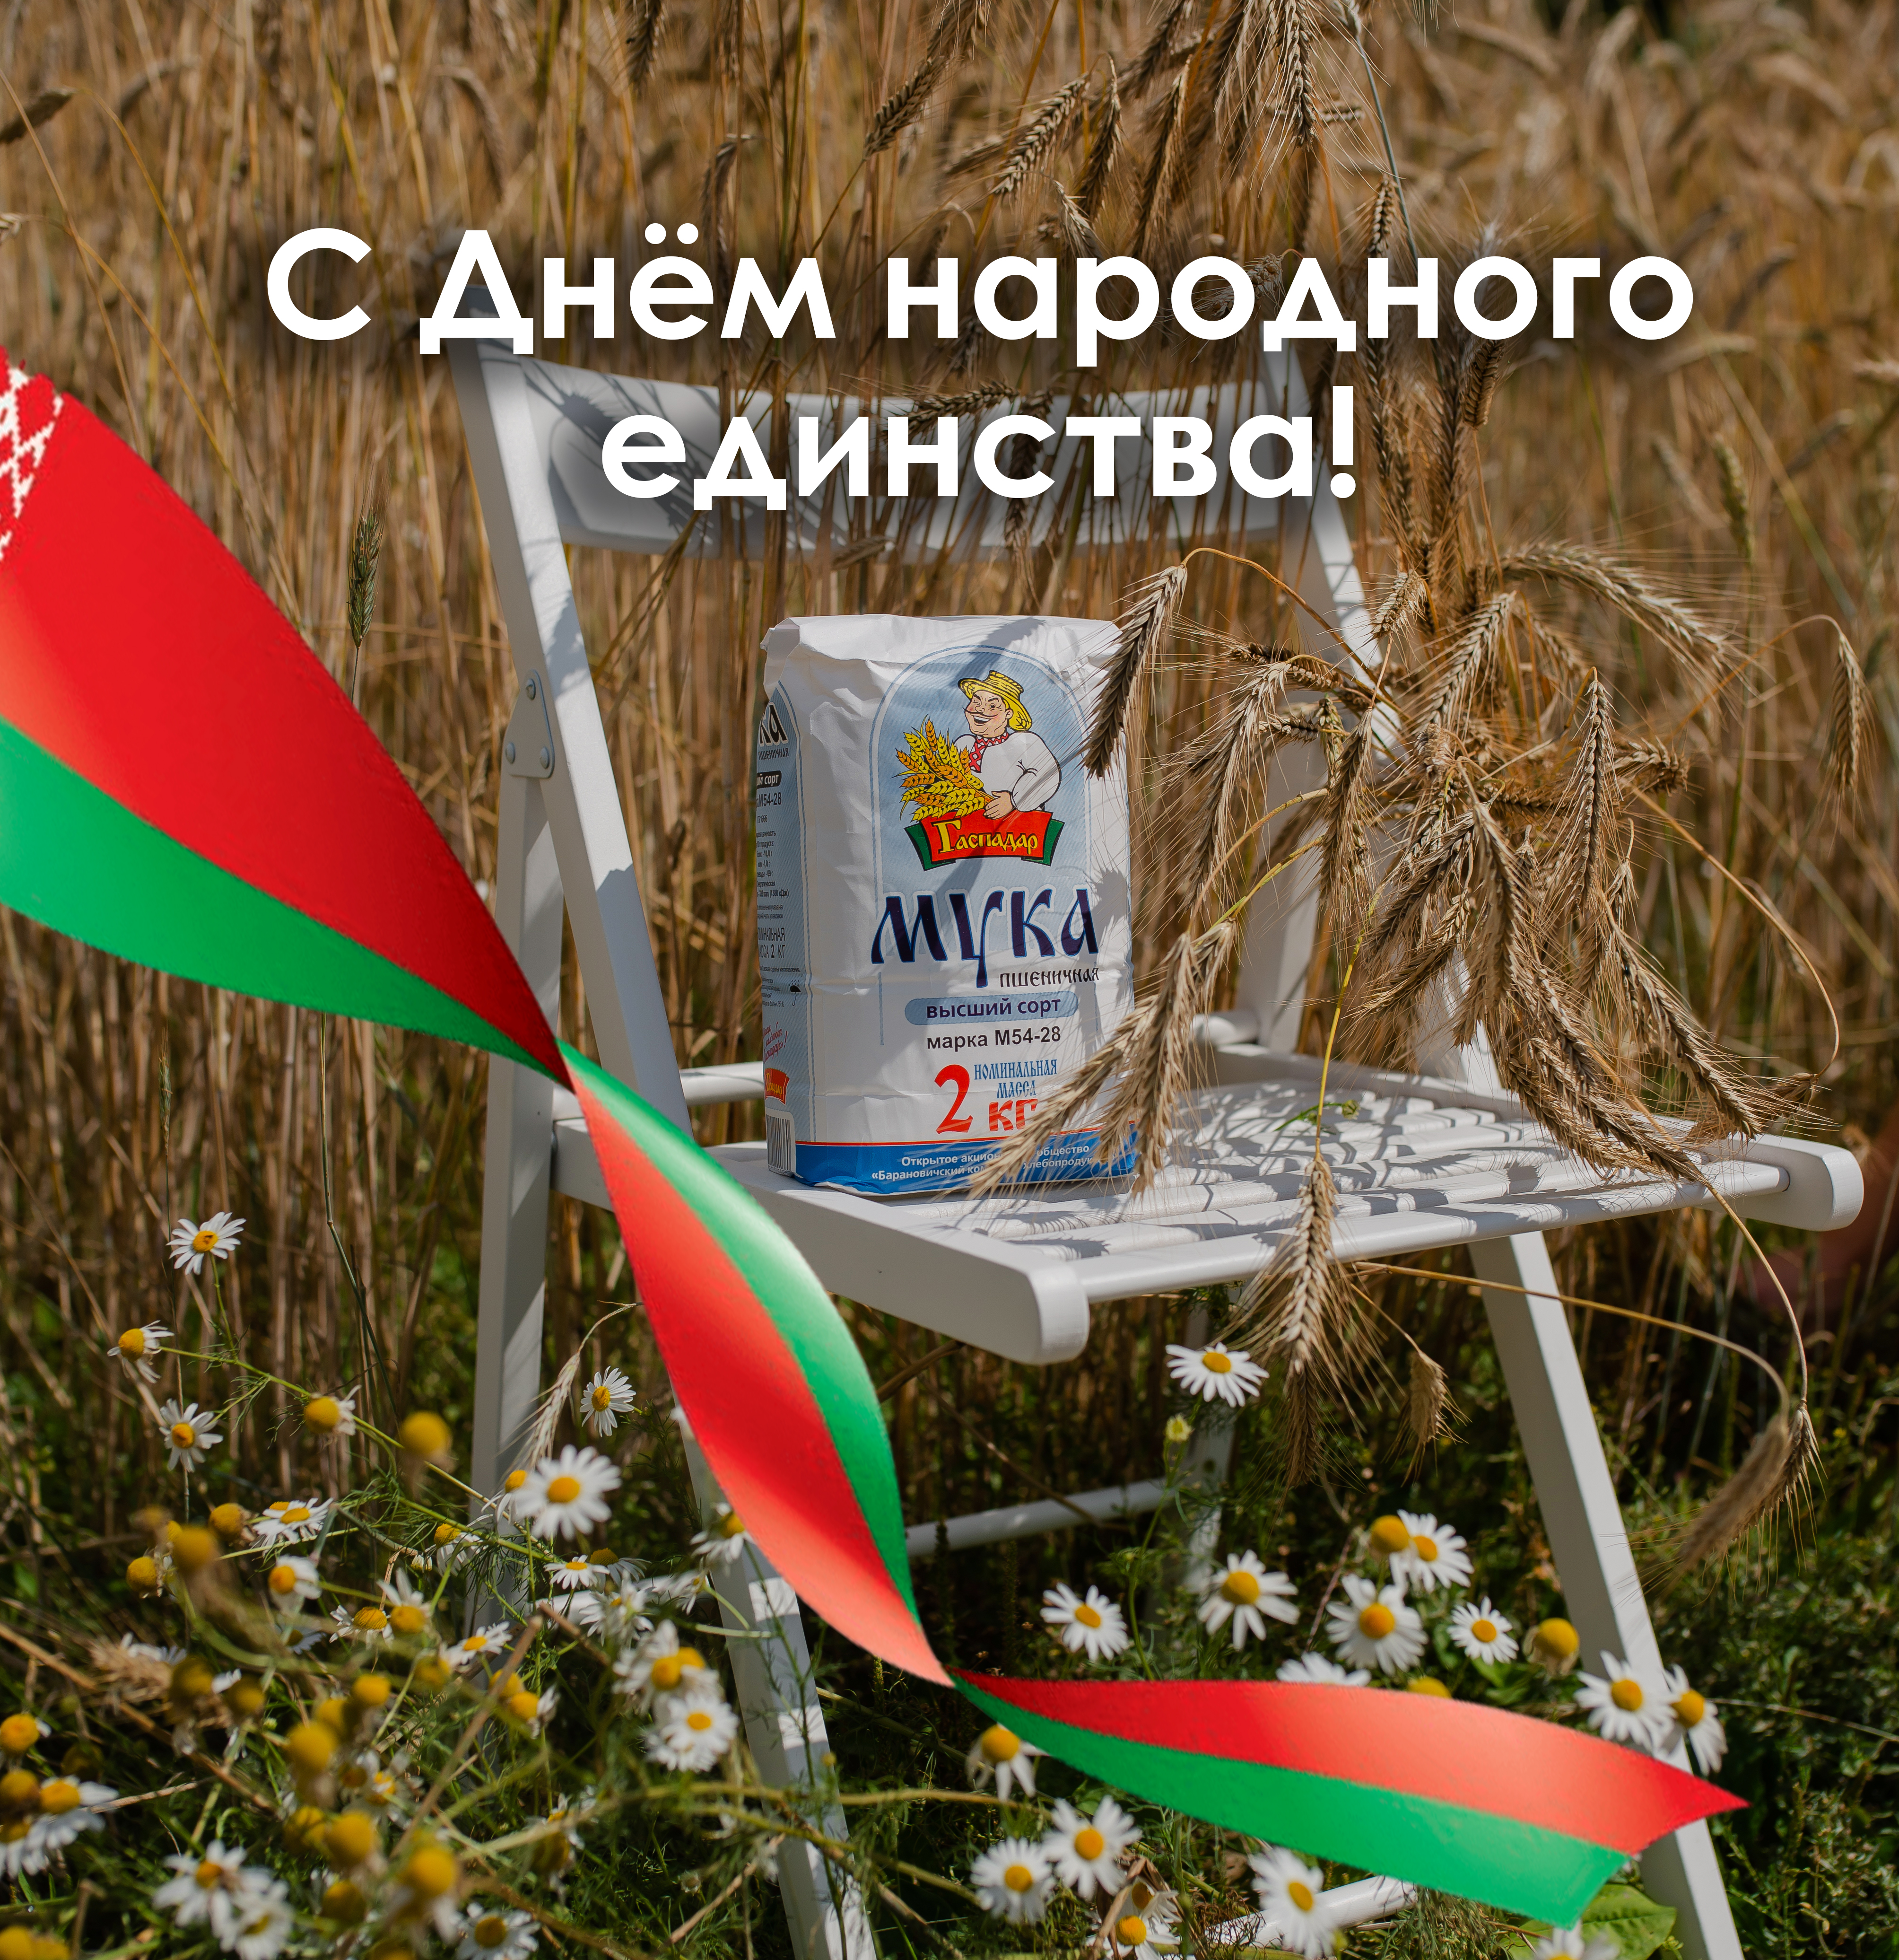 ОАО "Барановичхлебопродукт" поздравляет всех белорусов с Днём народного единства